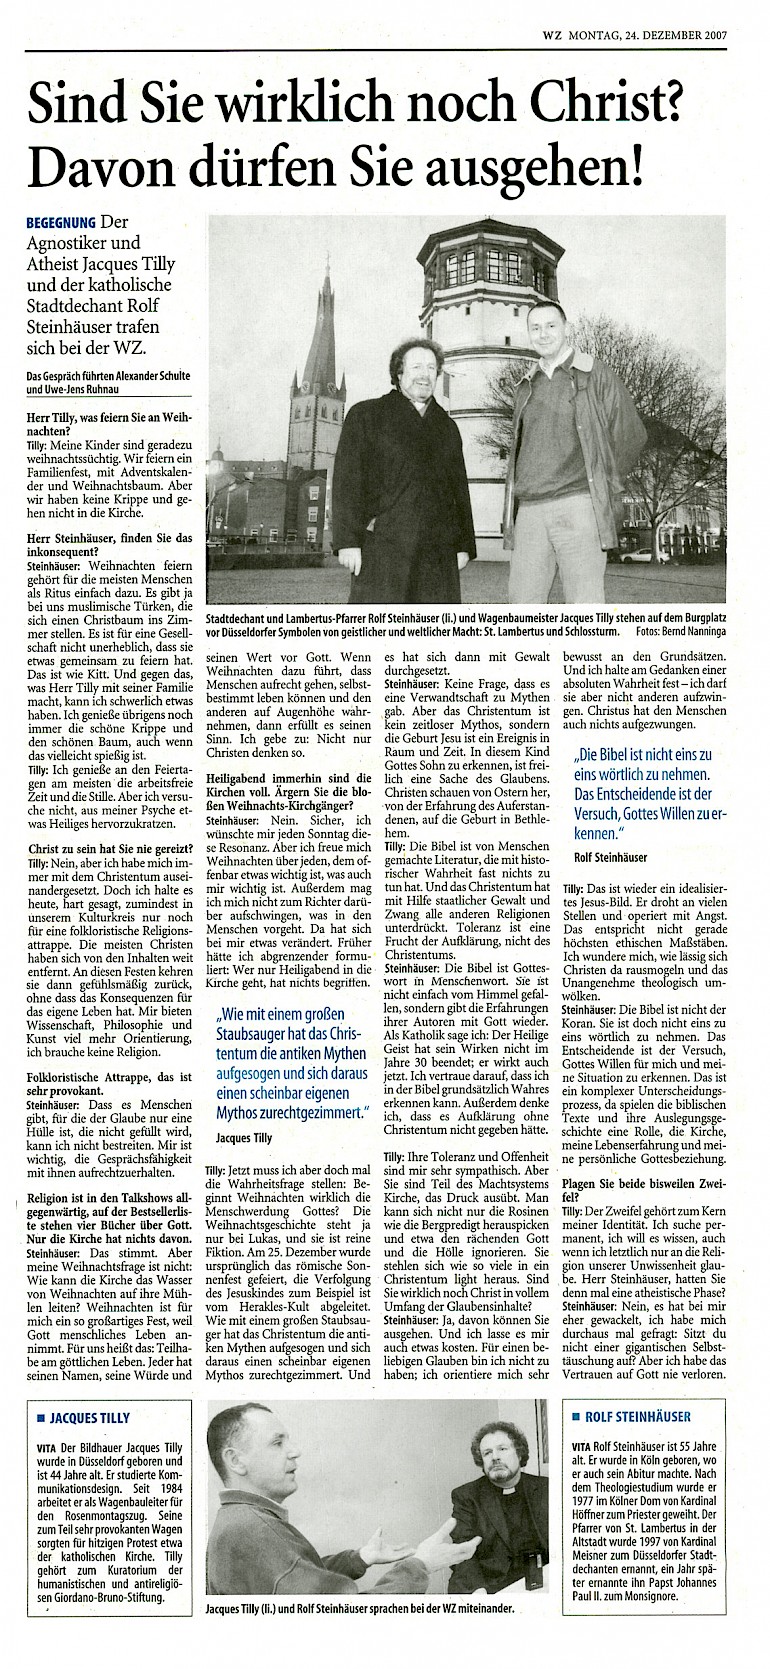 Westdeutsche Zeitung, 24.12.2007 Artikel im Wortlaut [/pressespiegel/2007/p-2007-12-24-wz-christ/p-2007-12-24-wz-christ-txt/]